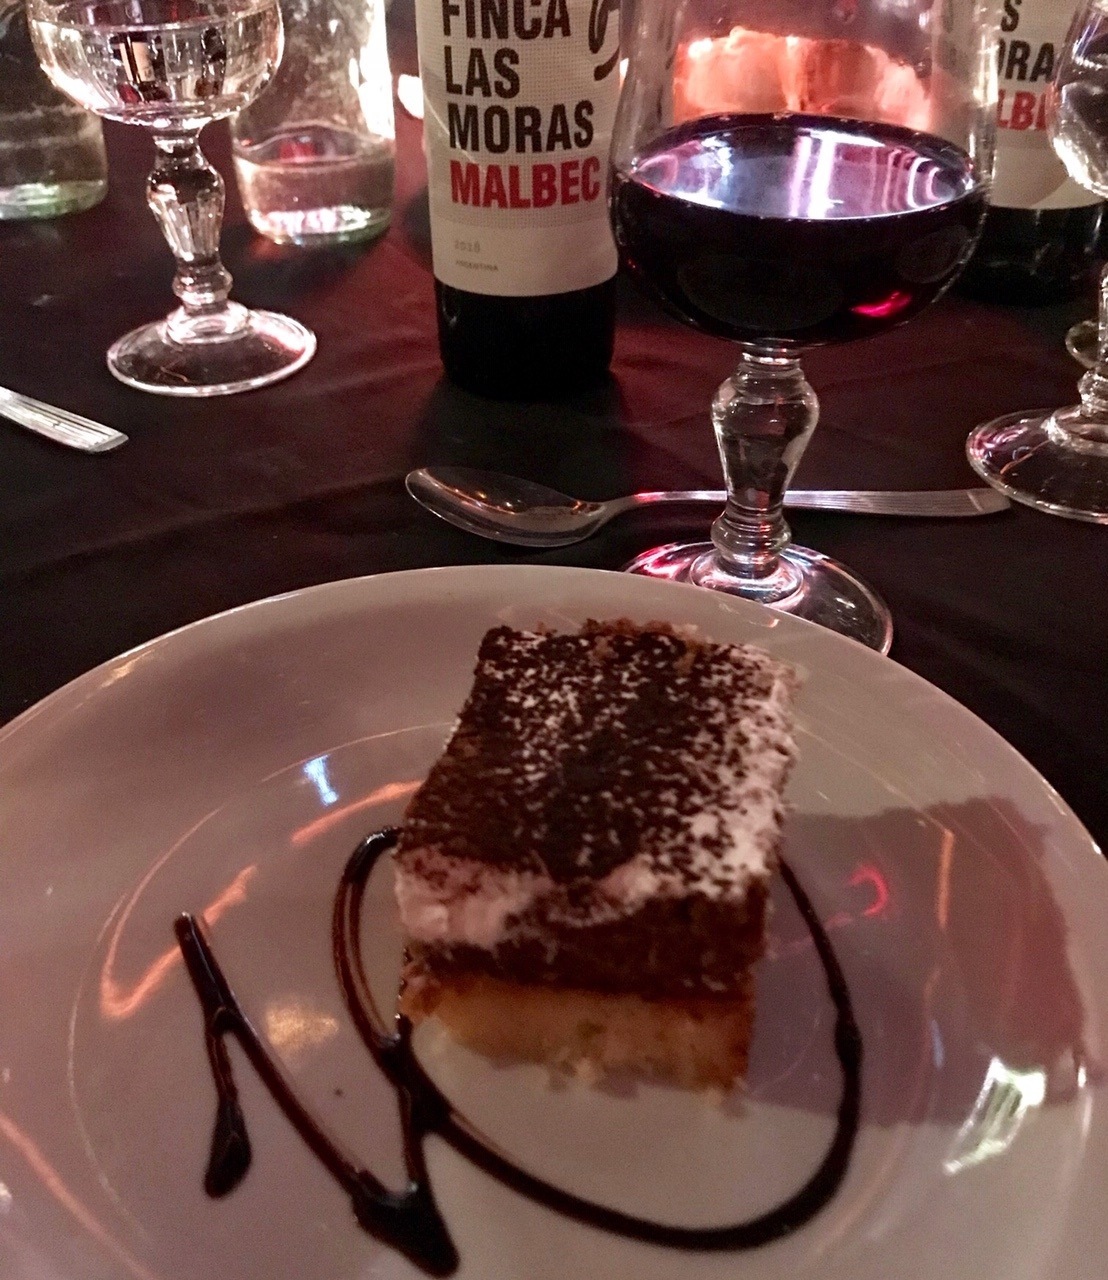 Sobremesa e vinho fazem parte do jantar desta casa de show de tango, em Buenos Aires